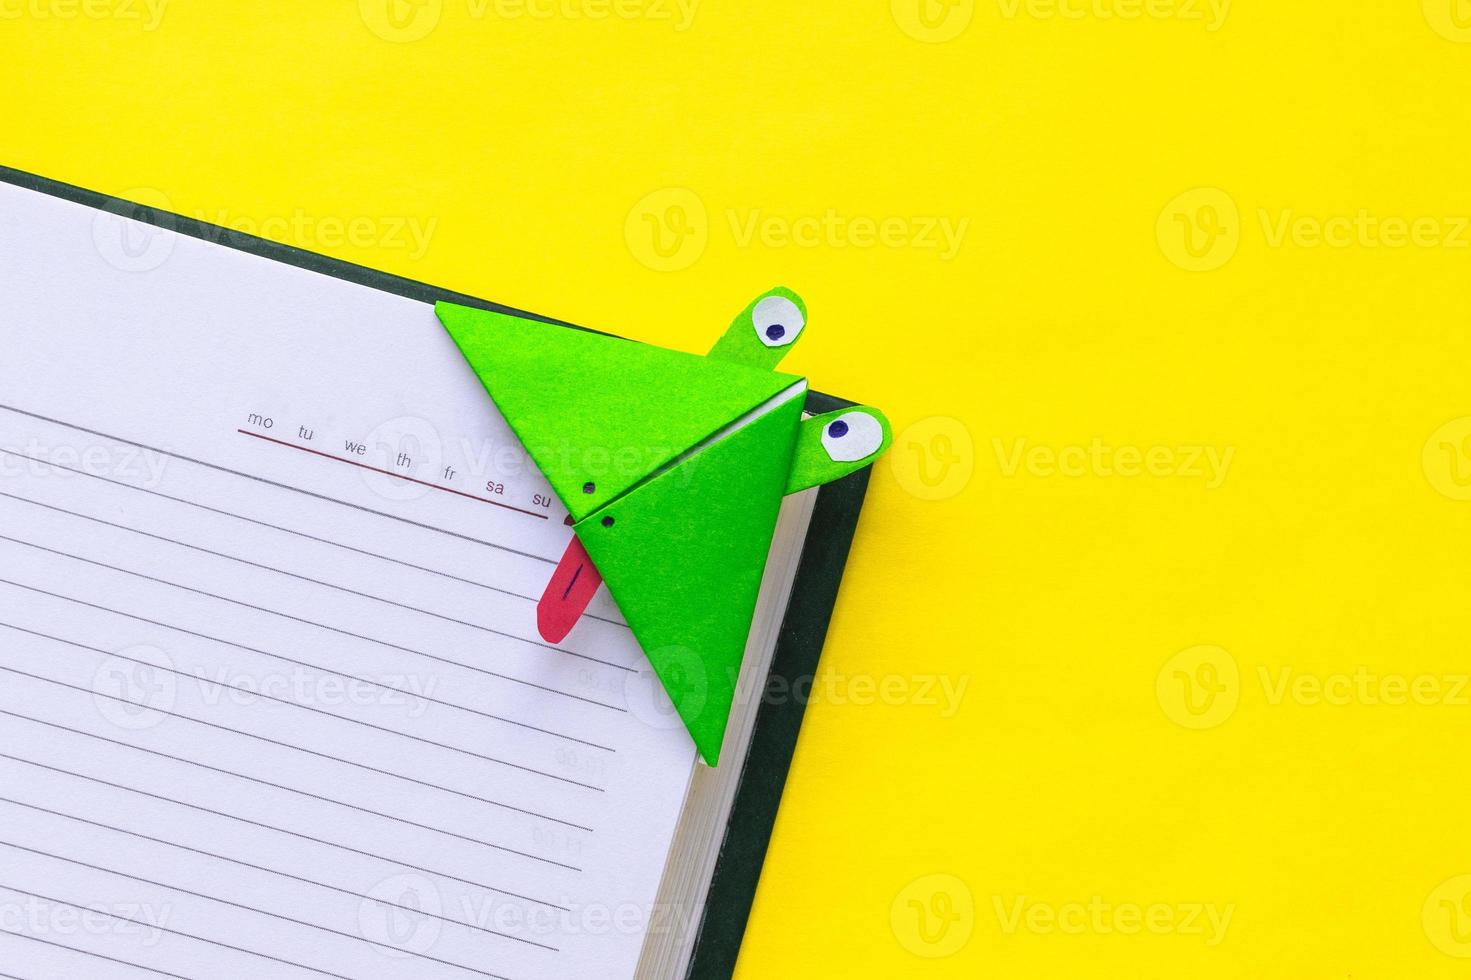 Instruction photo étape par étape comment faire une grenouille de signet en papier origami. bricolage simple avec le concept des enfants pour enfants.